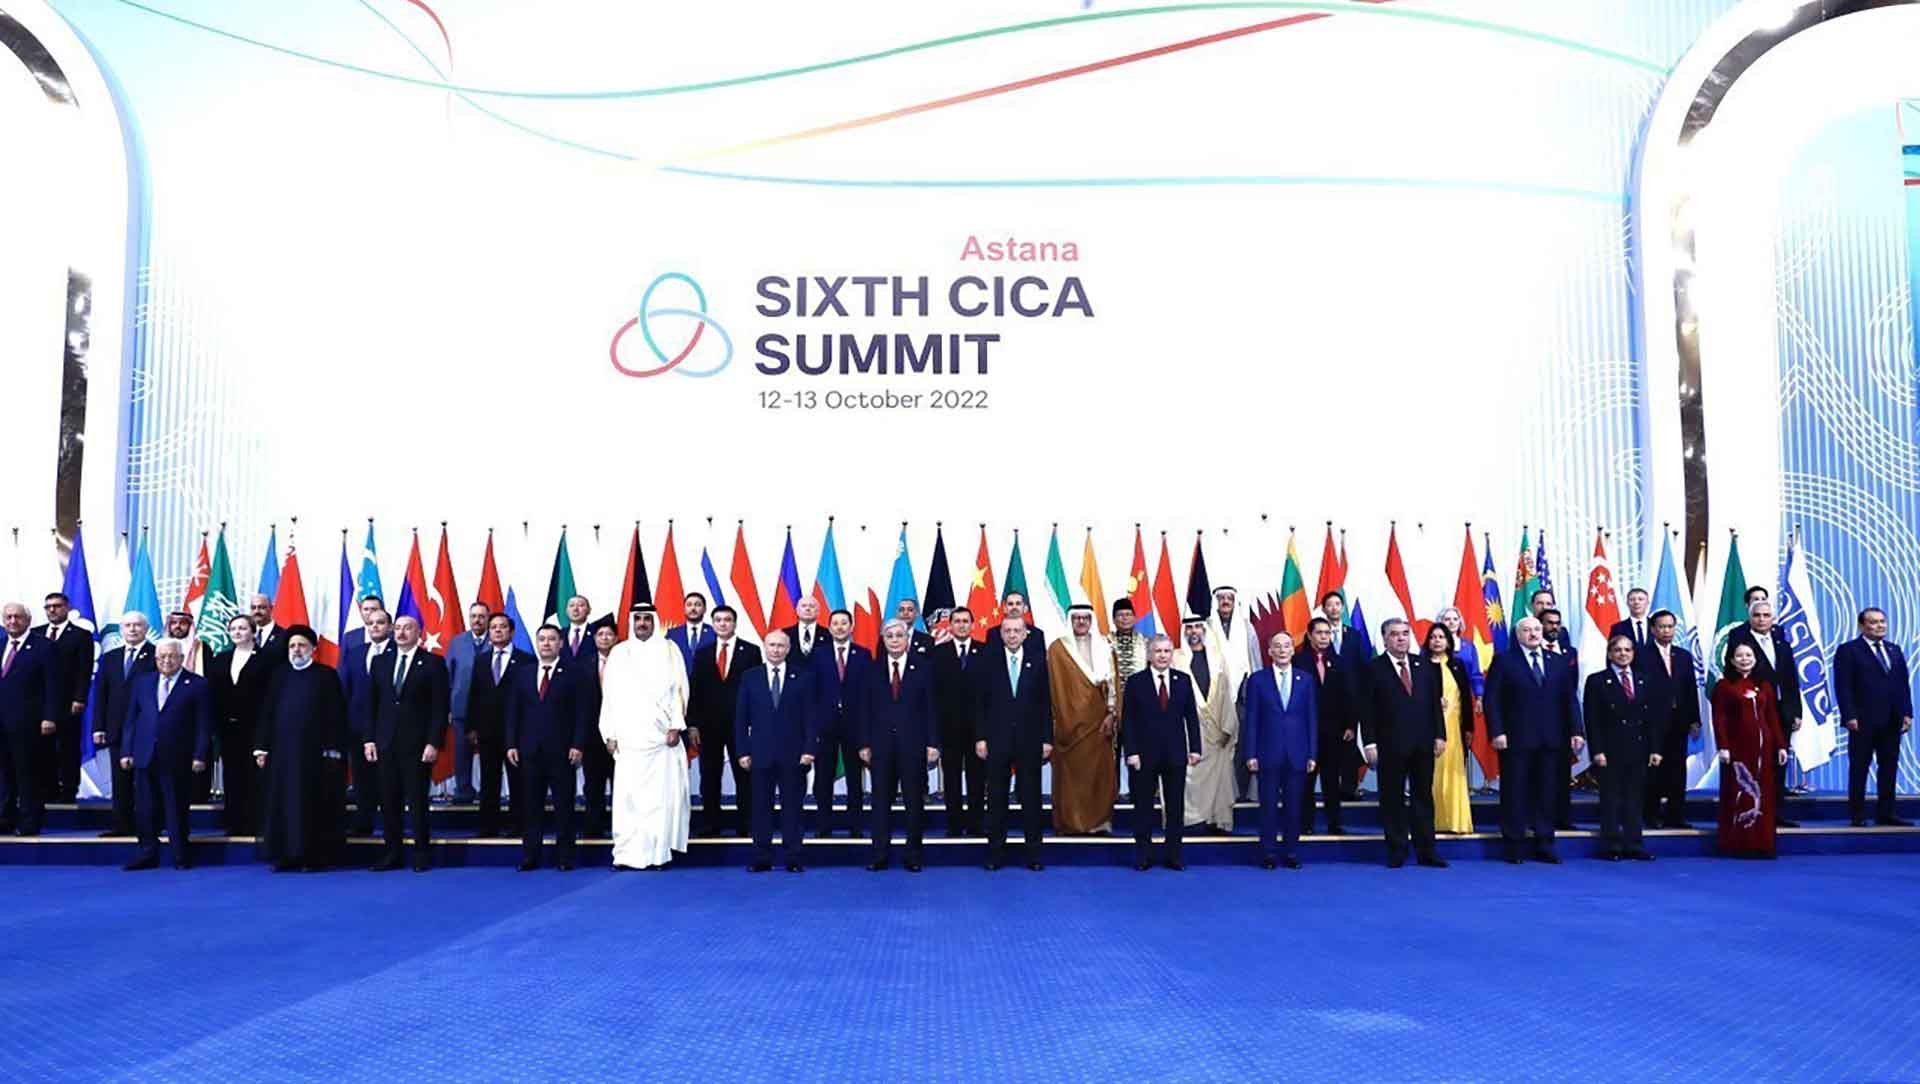 Đóng góp vào công việc chung của CICA, thắt chặt quan hệ với Croatia và Kazakhstan